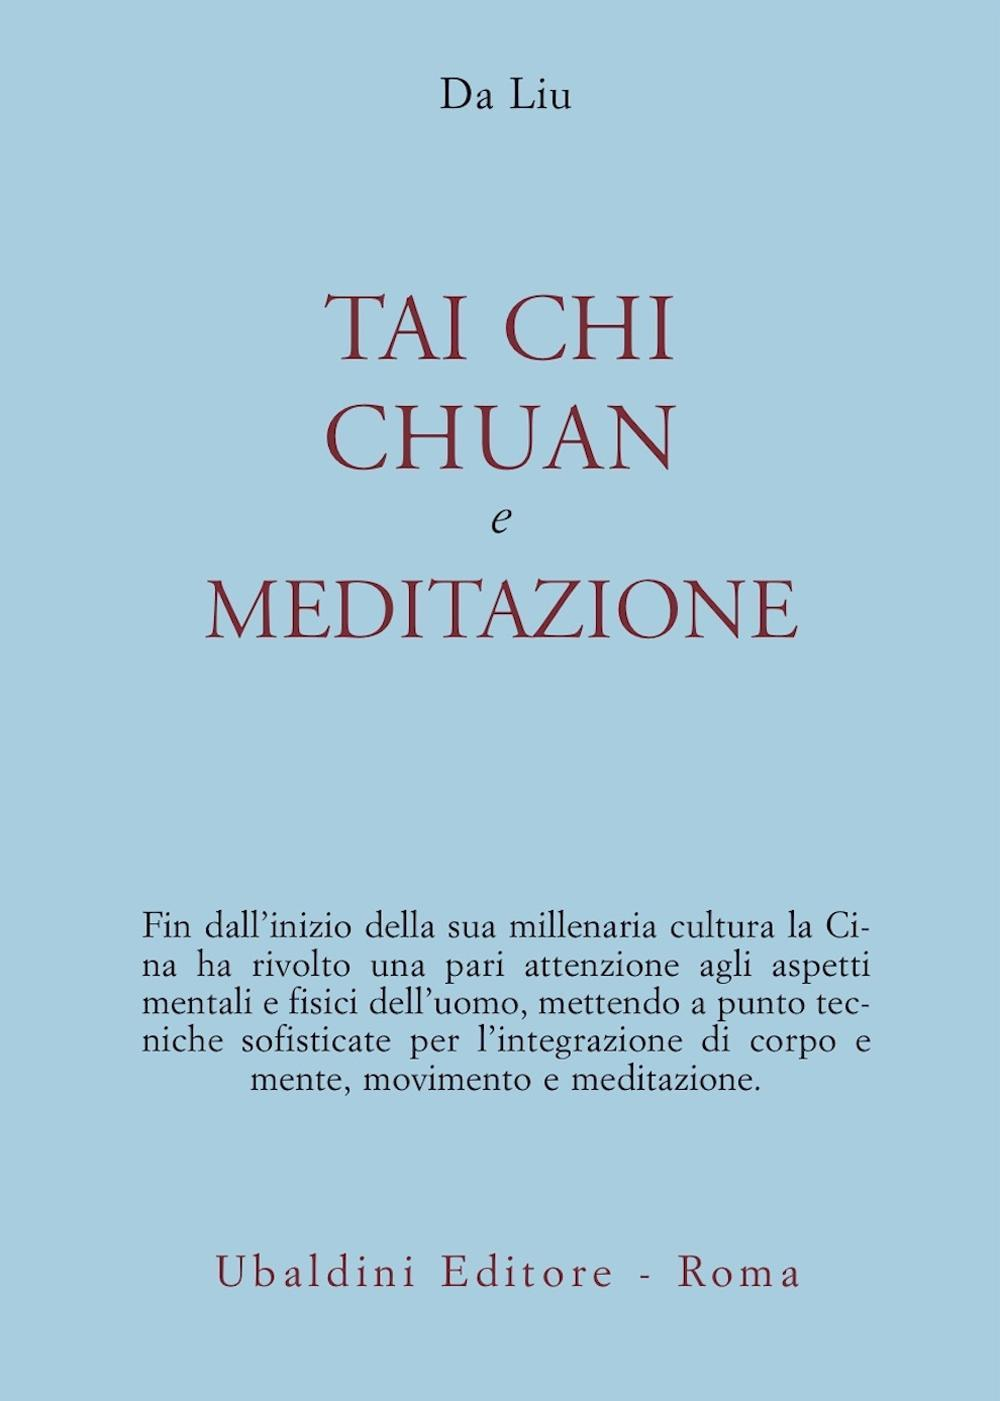 Image of Tai chi chuan e meditazione